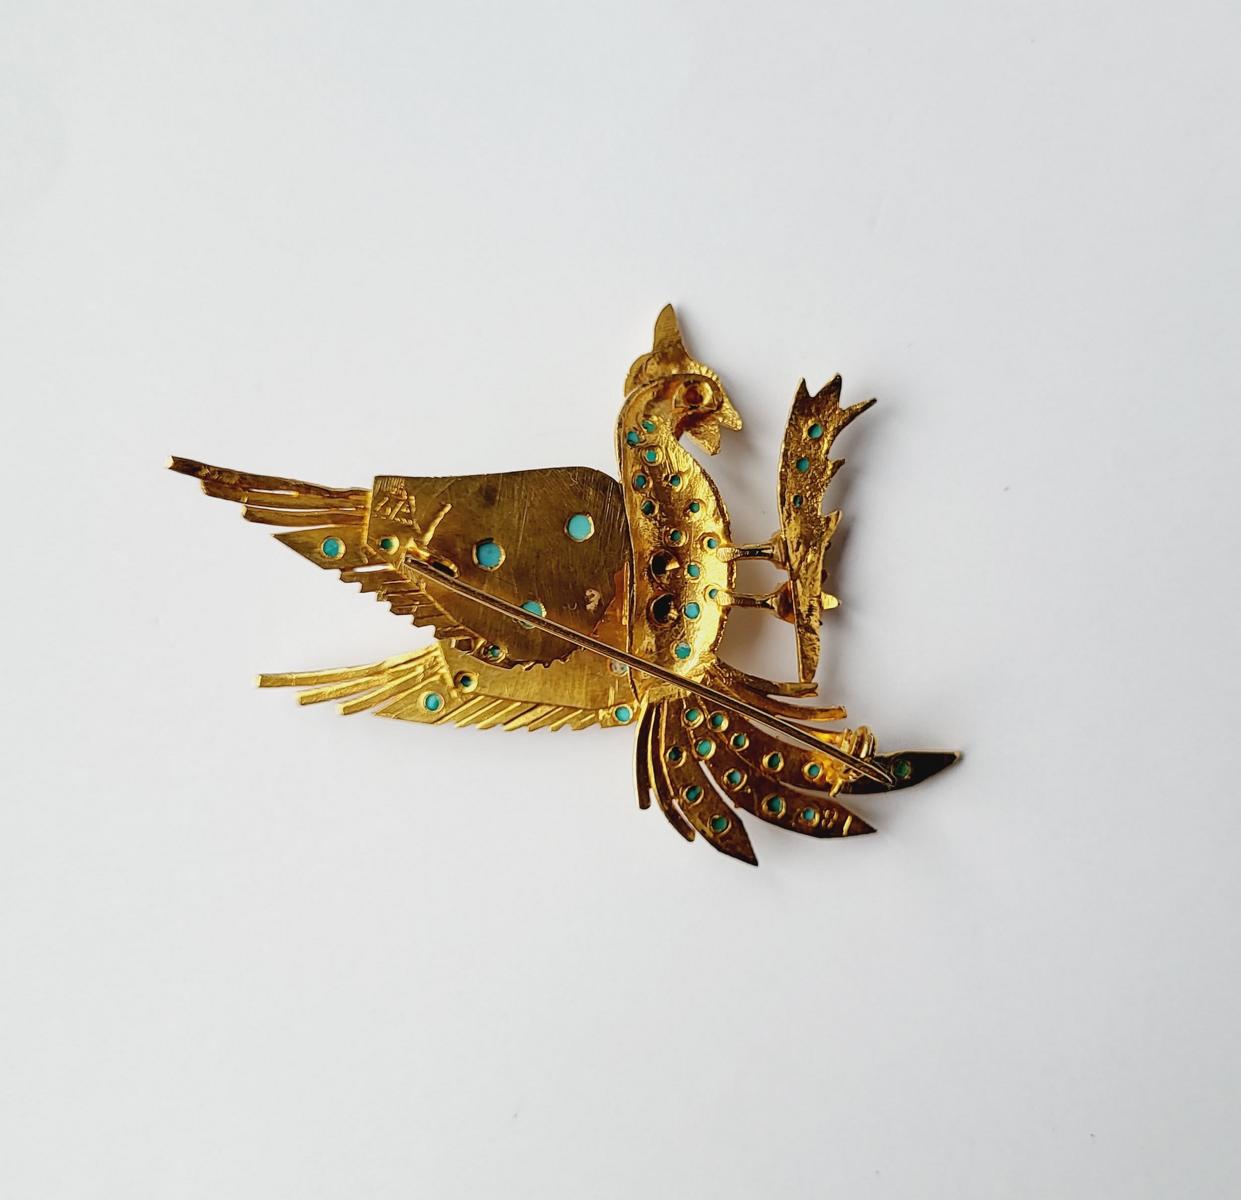 Brosche mit Türkisen in Vogelform auf einem Ast sitzend, 14 Karat Gelbgold-2